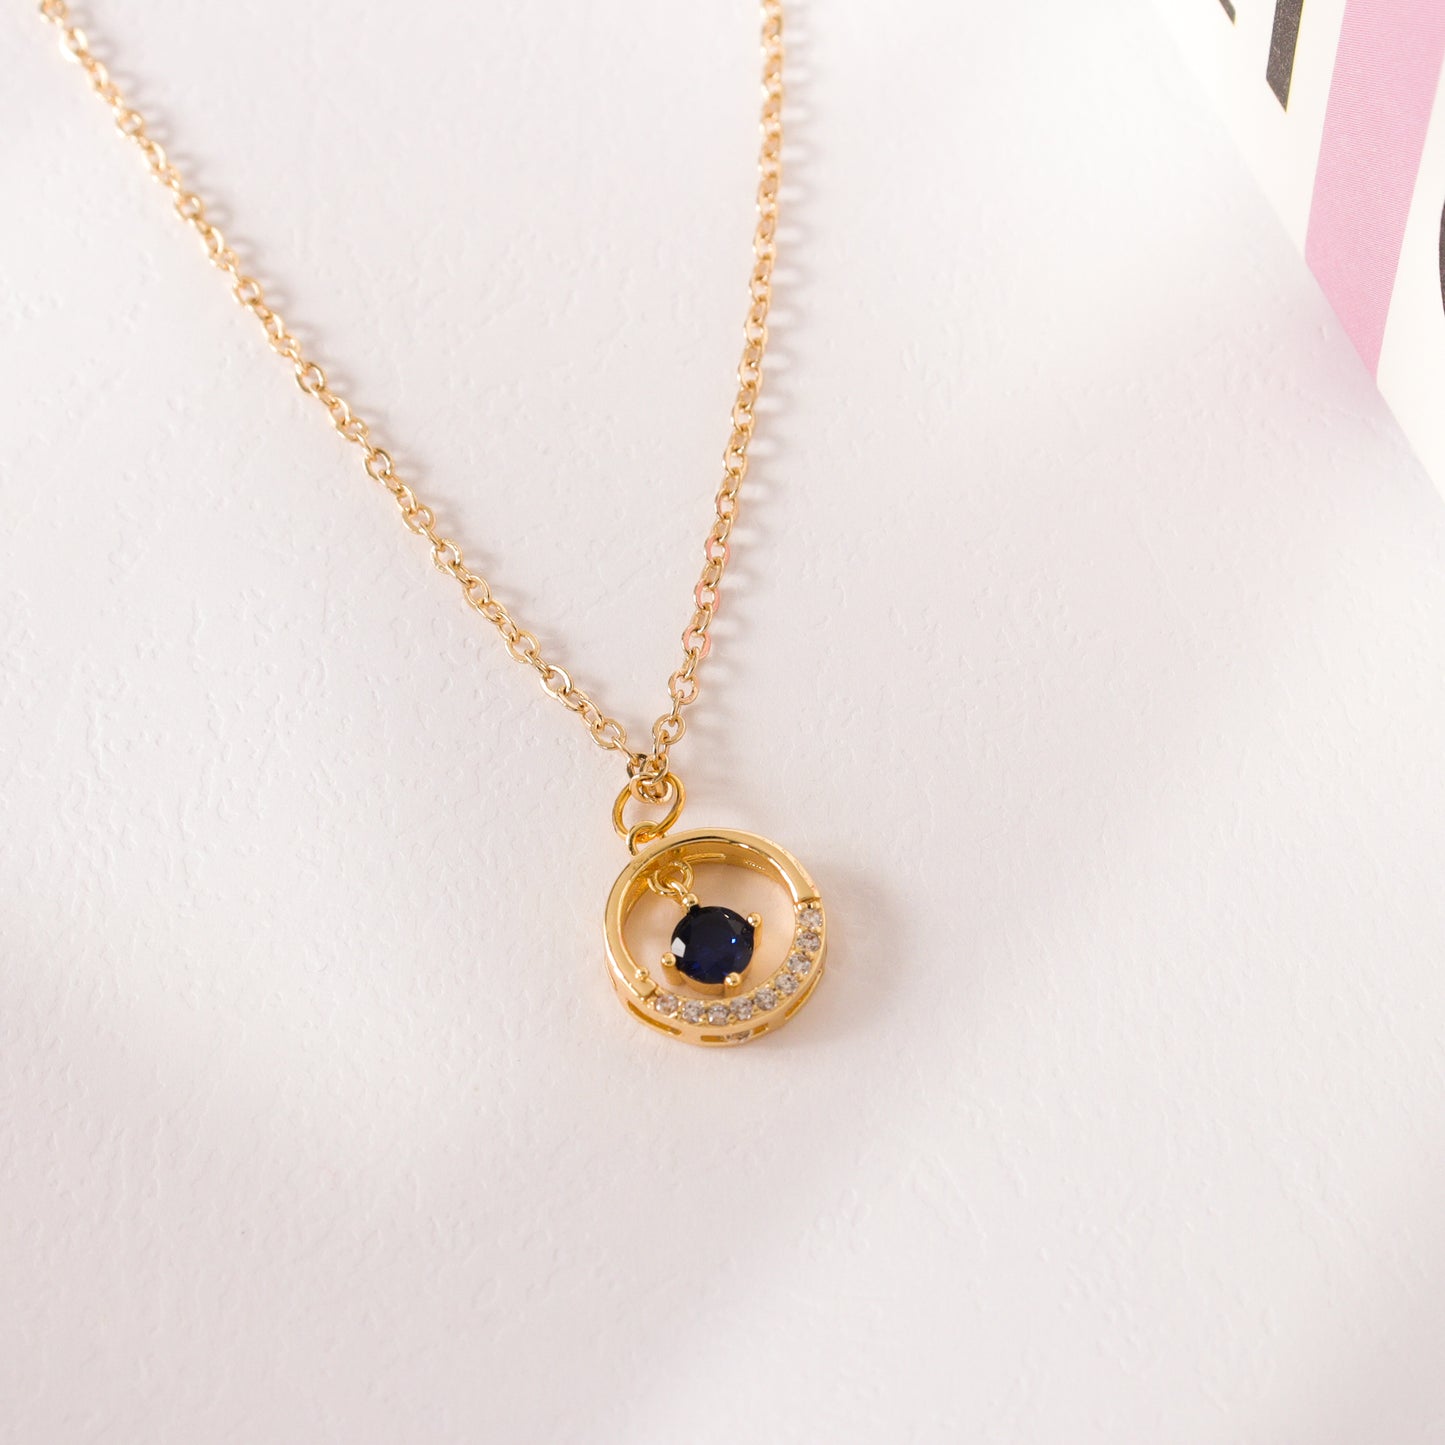 Petite Blue Gold Necklace